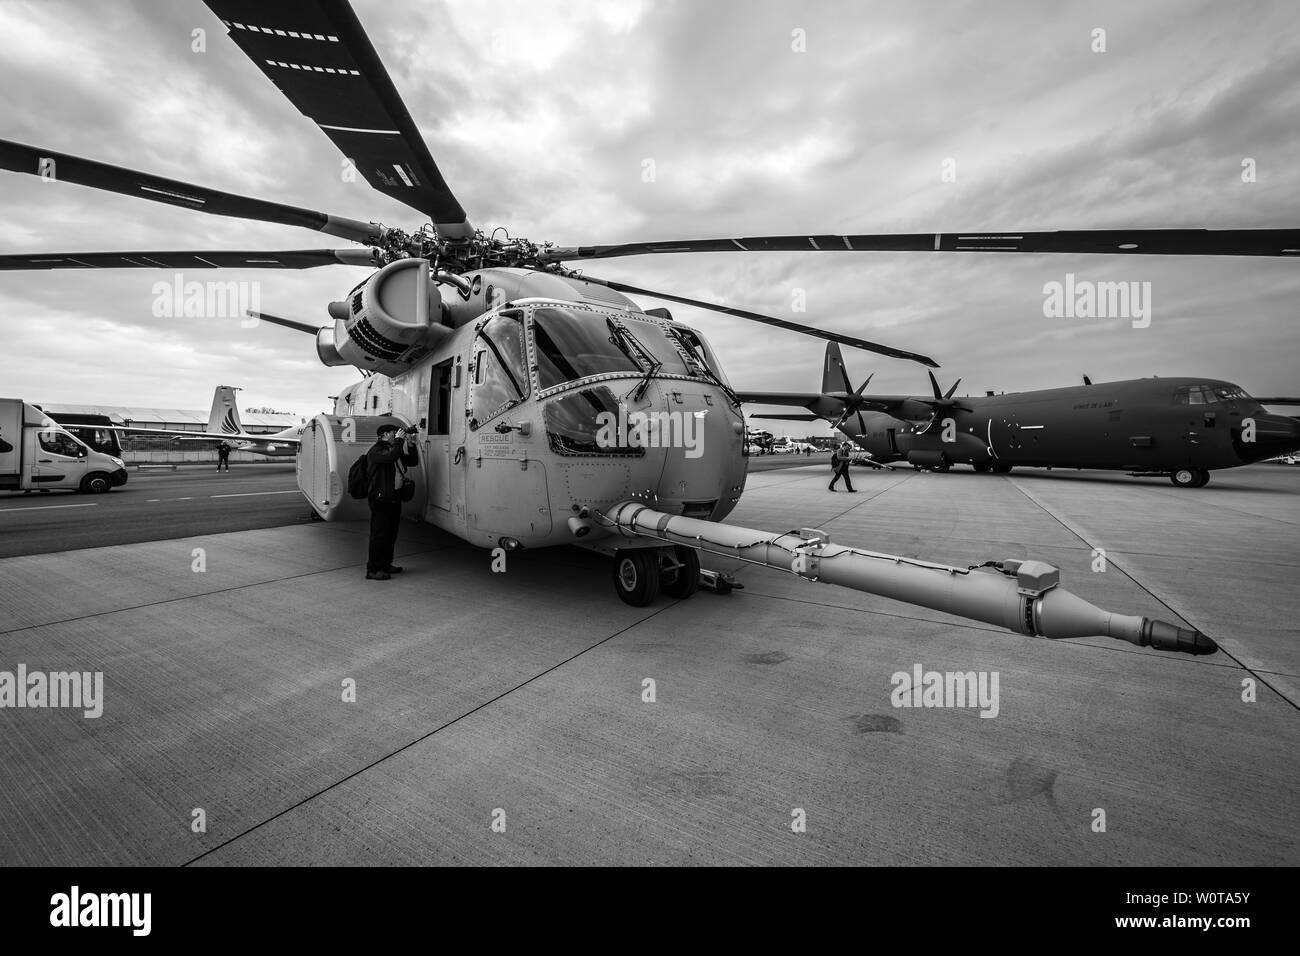 Berlín, Alemania - 25 de abril de 2018: Cargas Pesadas helicóptero Sikorsky CH 53K Rey semental por la Infantería de Marina de Estados Unidos en el aeródromo.blanco y negro. Exposición ILA Berlin Air Show 2018 Foto de stock